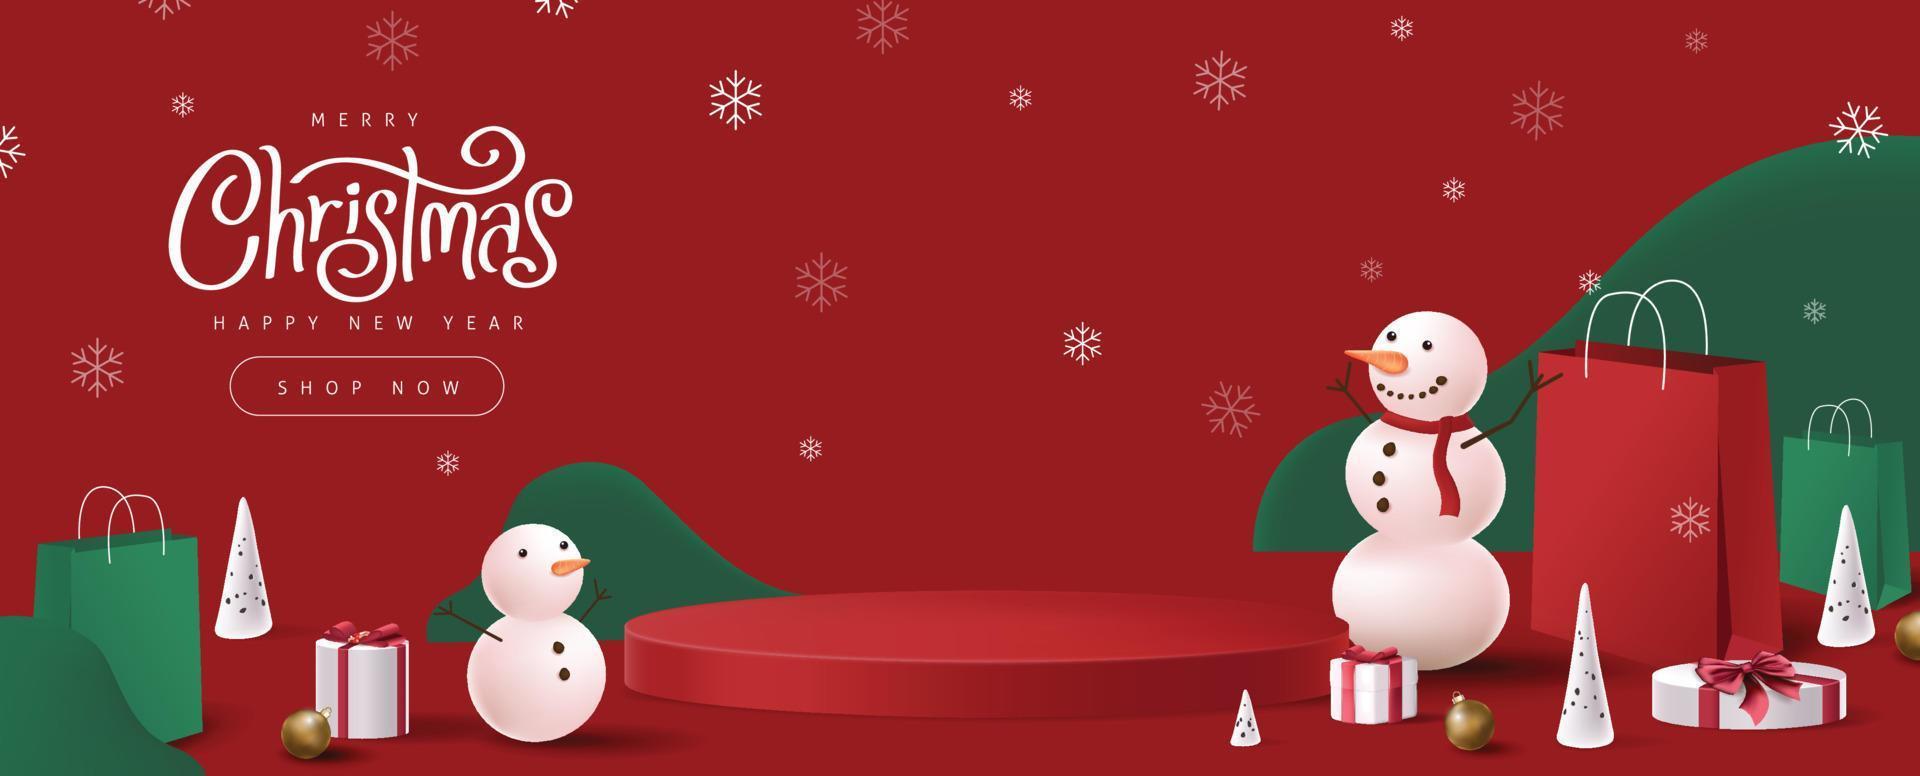 frohe weihnachten banner mit zylindrischer form der produktanzeige und winterurlaubszusammensetzung vektor